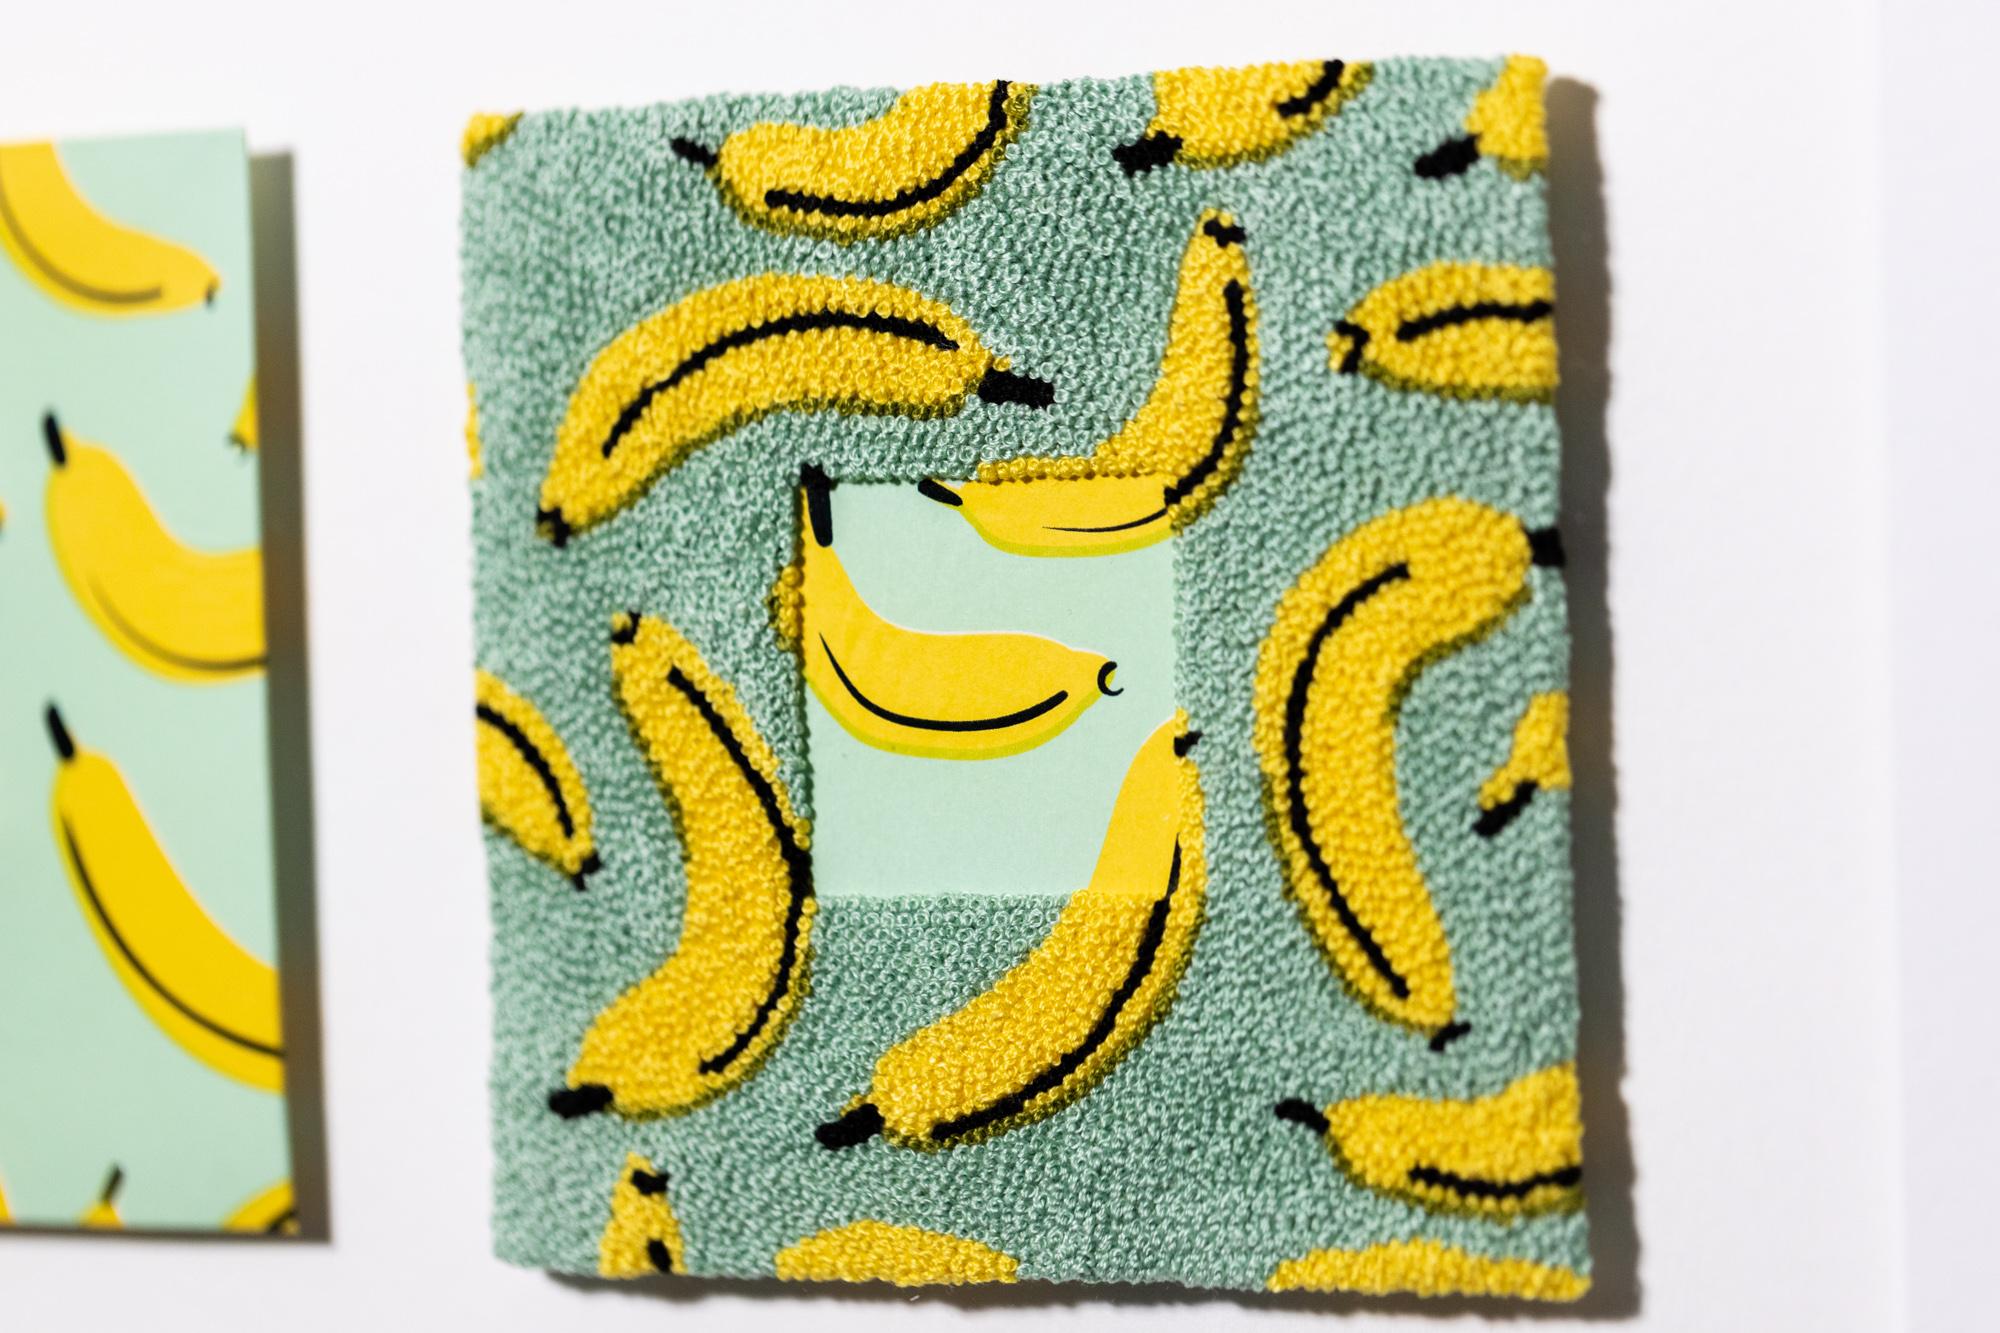 Complete Me: Bananas - Contemporary Mixed Media Art by Kelly Kozma